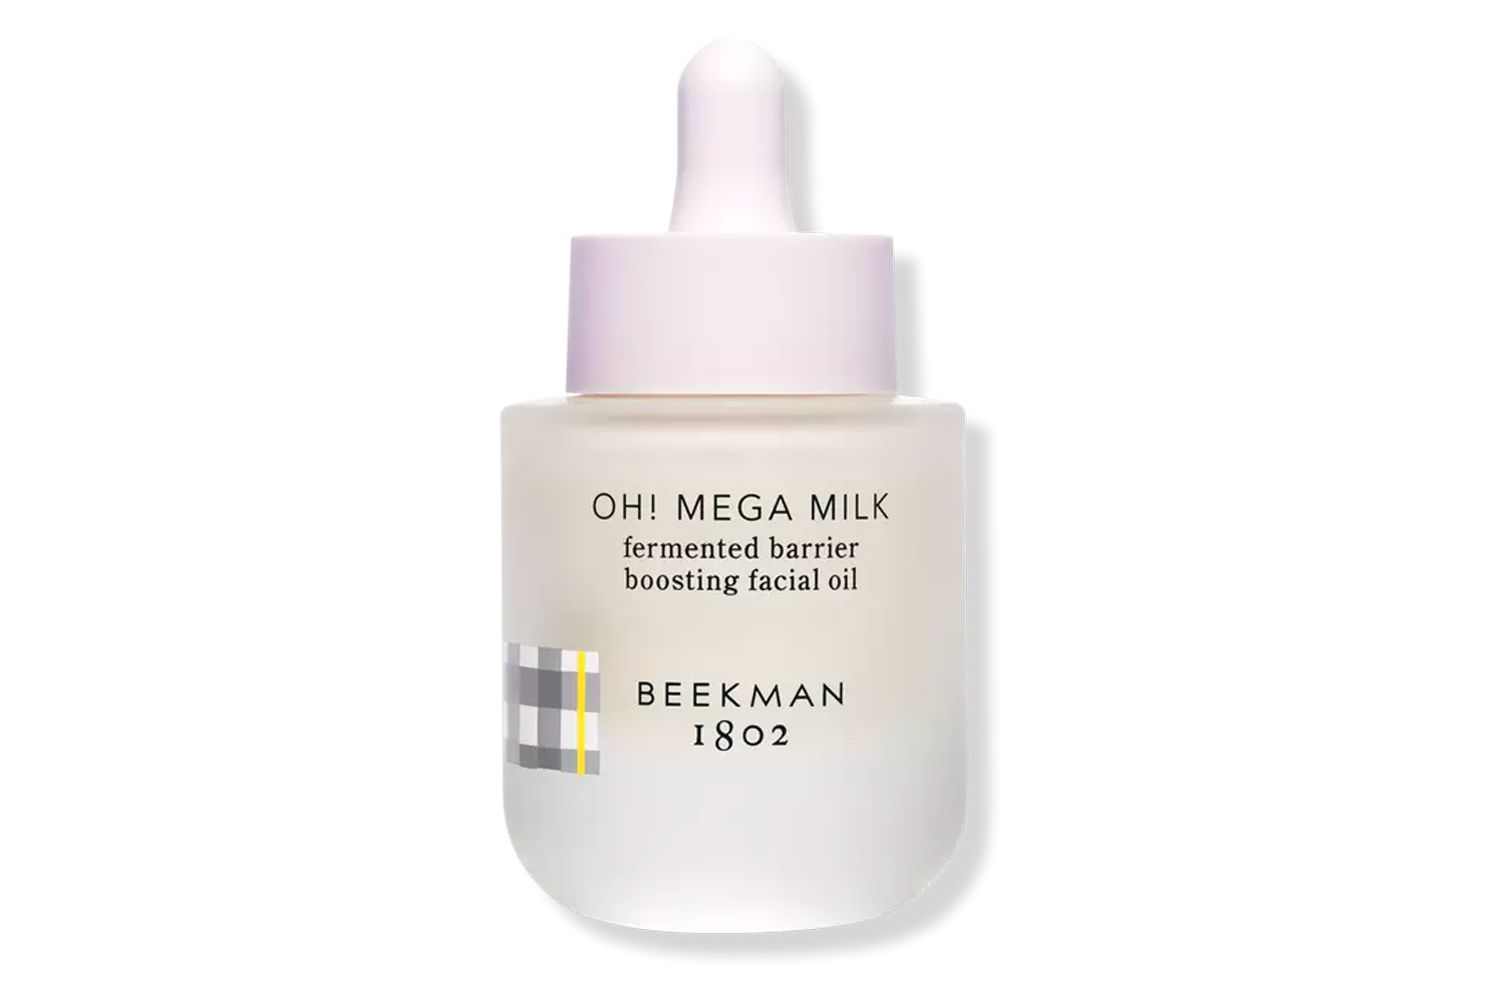 Beekman 1802 Oh! Mega barreira fermentada de leite